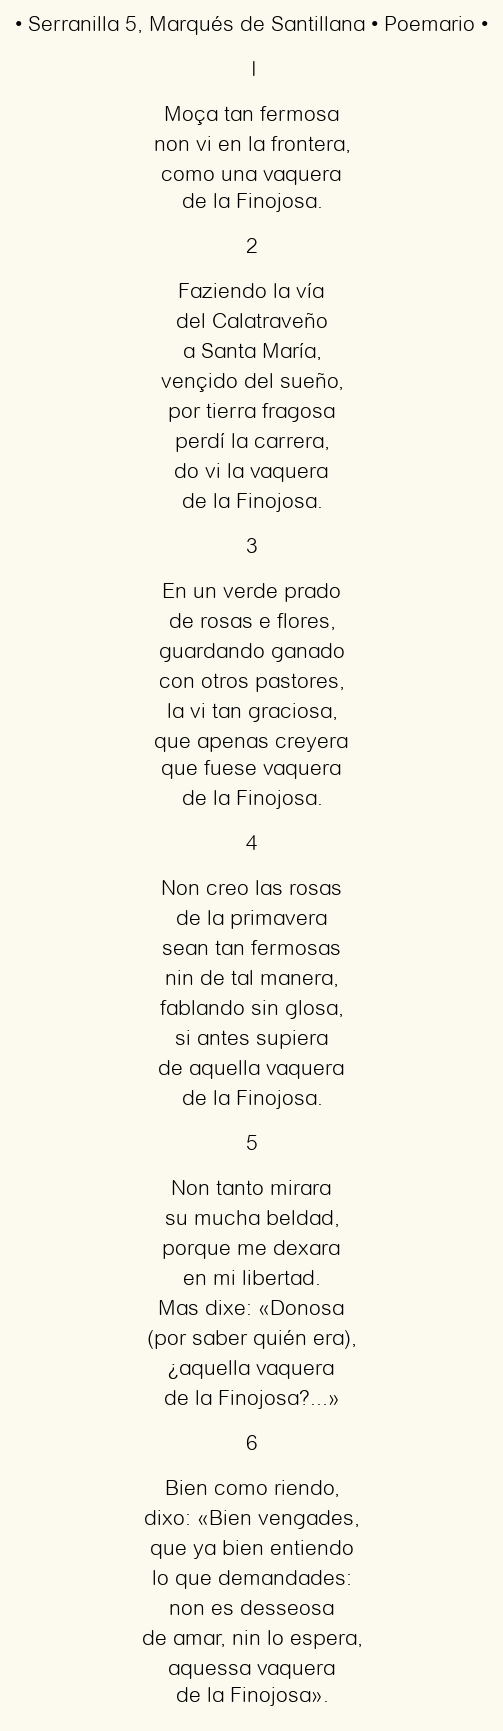 Imagen con el poema Serranilla 5, por Marqués de Santillana